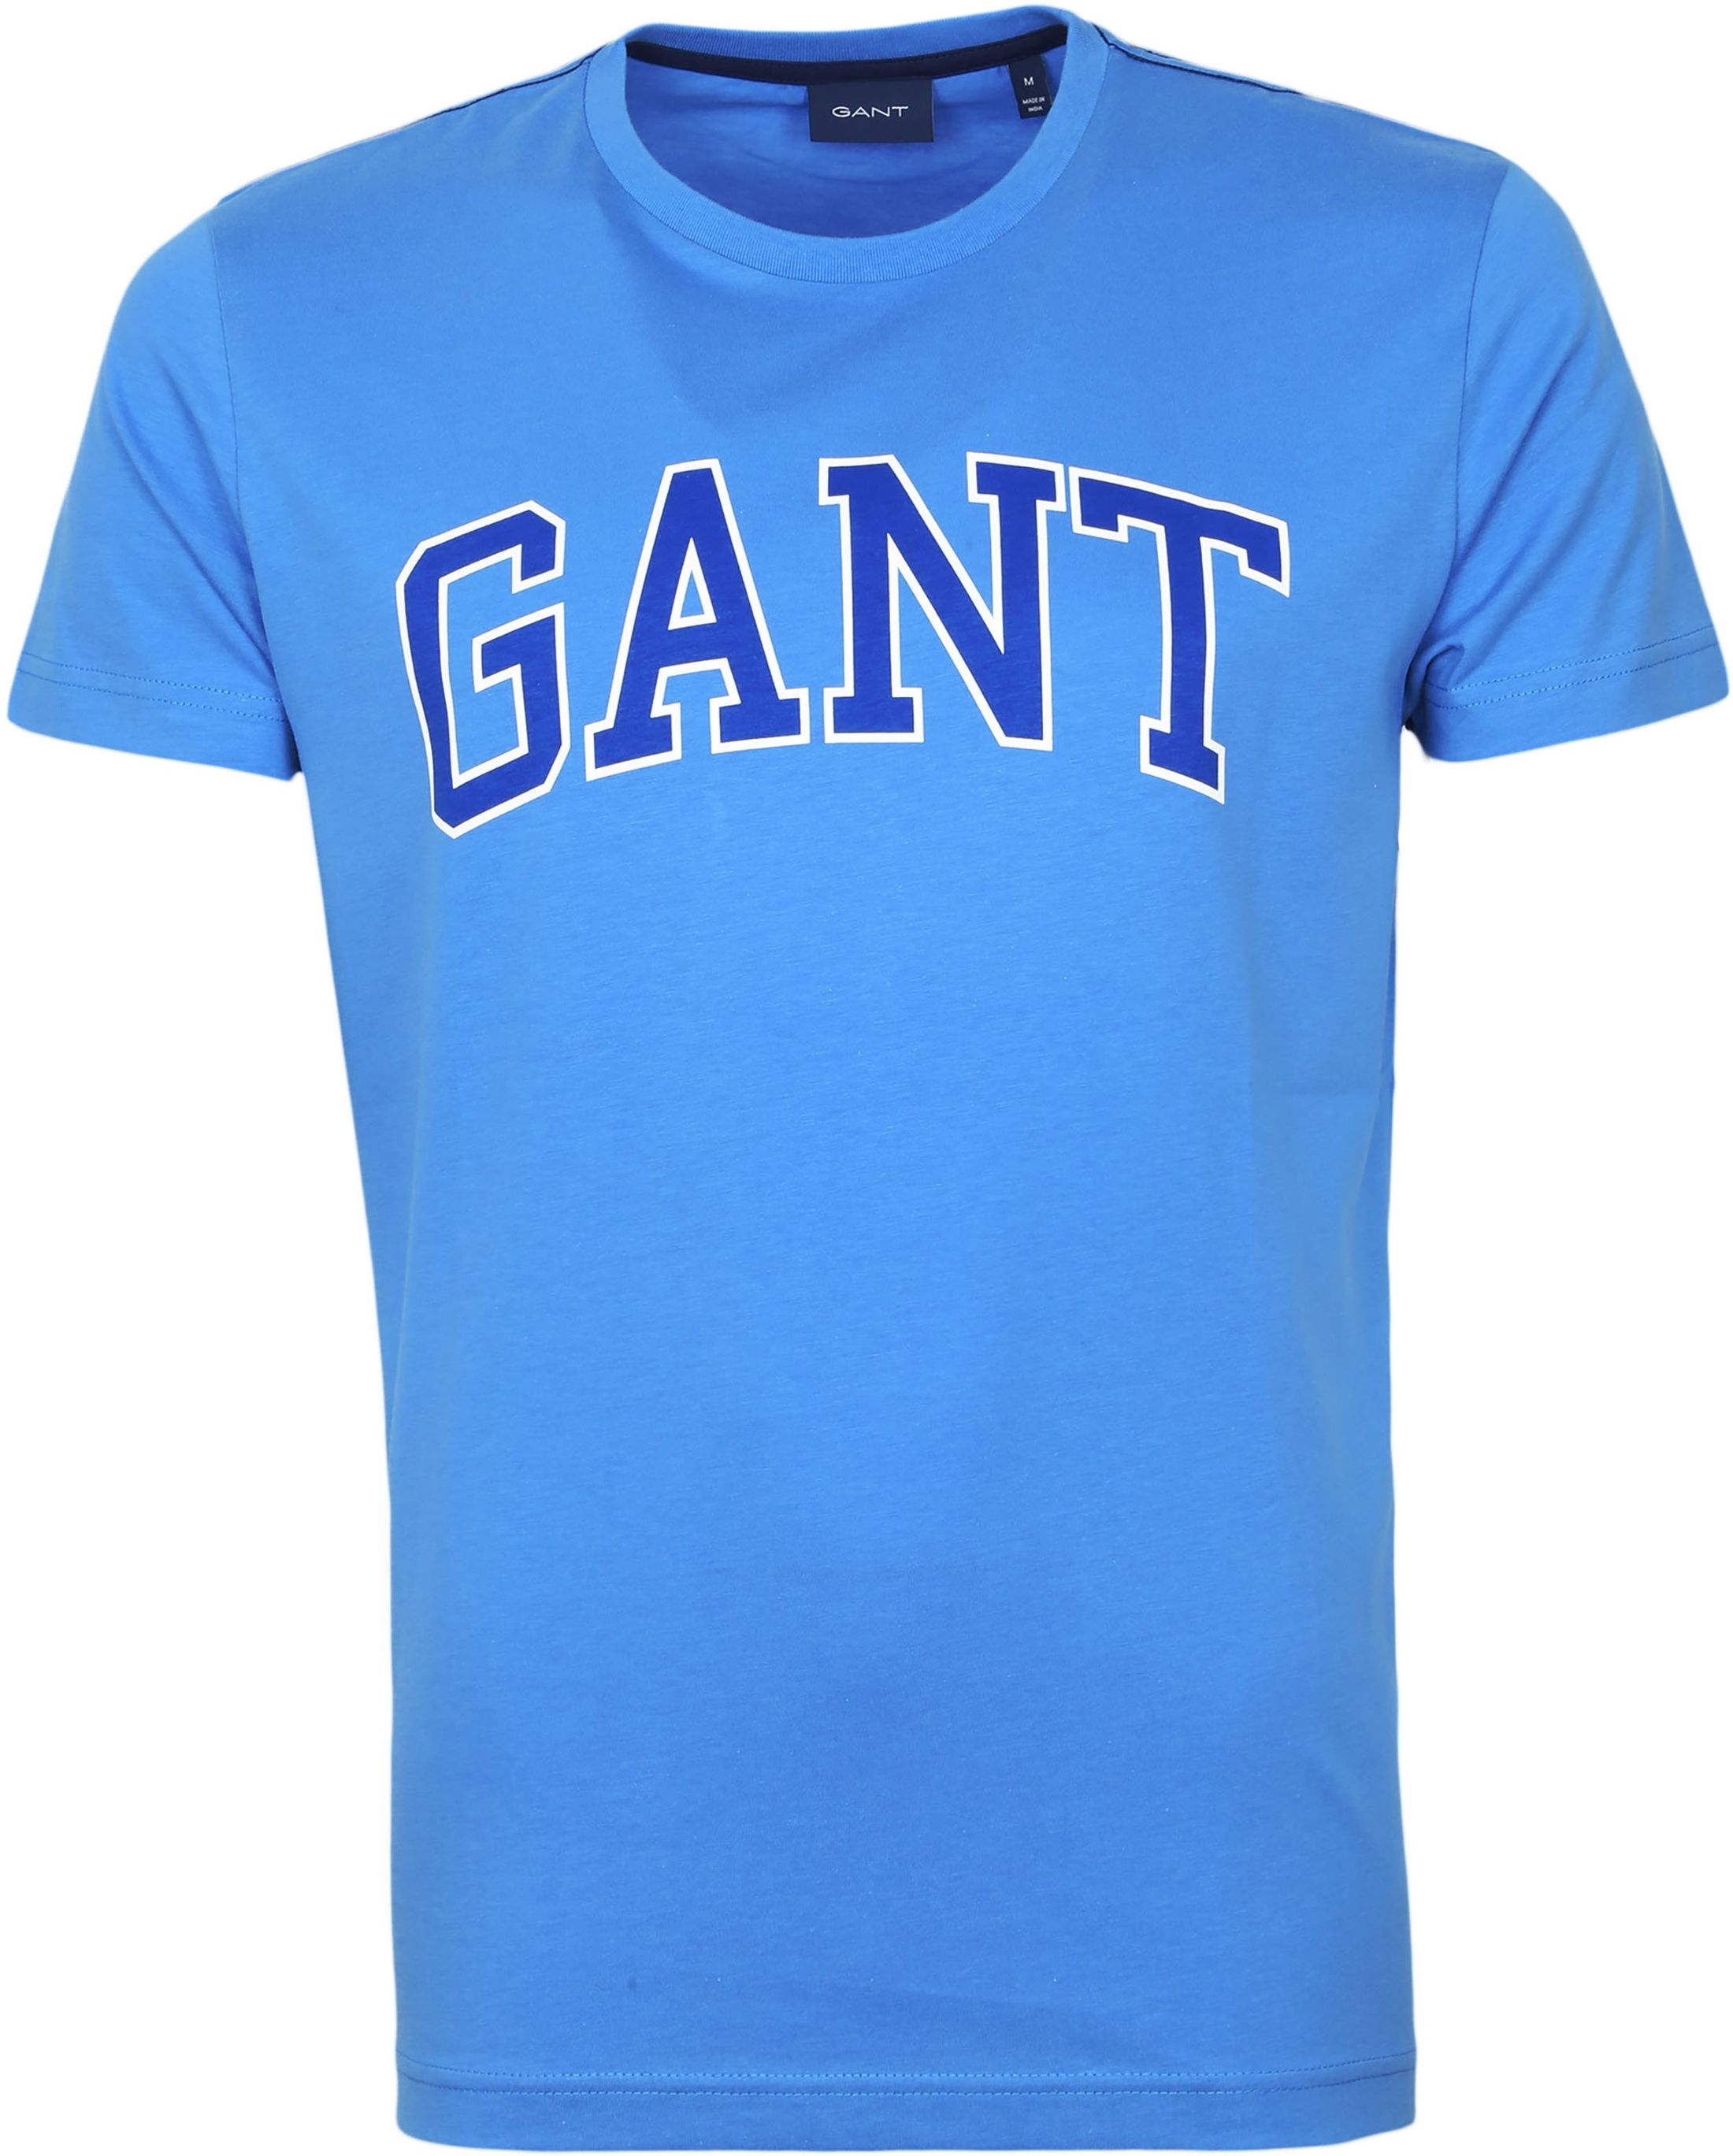 Gant T-shirt Logo Graphique Bleu taille M